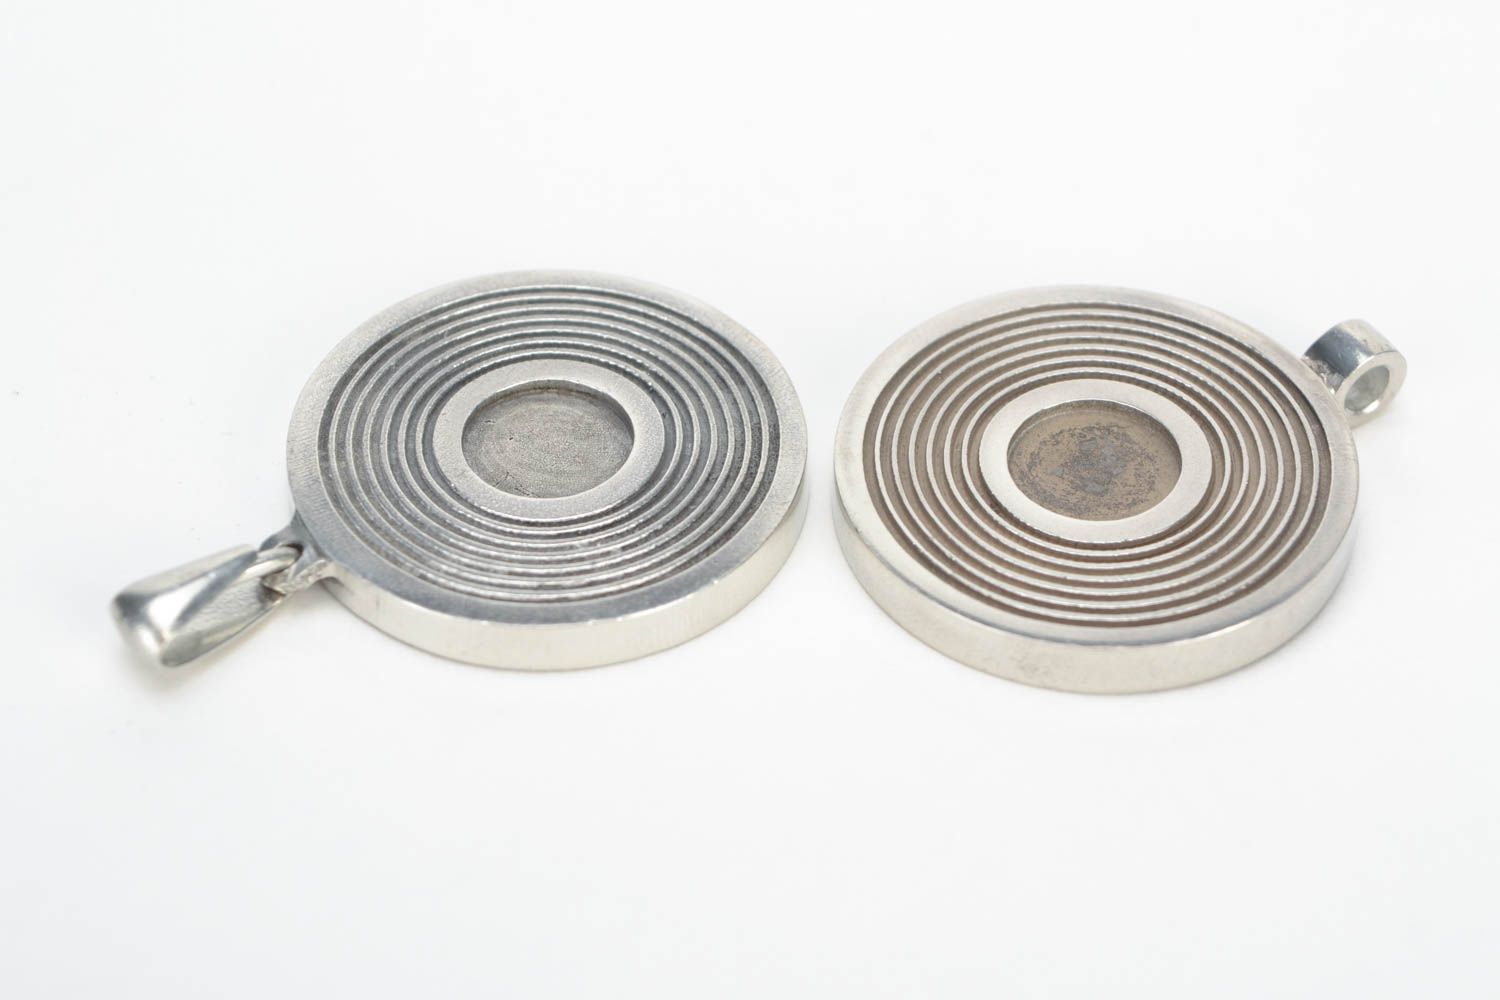 Заготовки для бижутерии круглые металлические комплект из 2 штук ручная работа фото 3